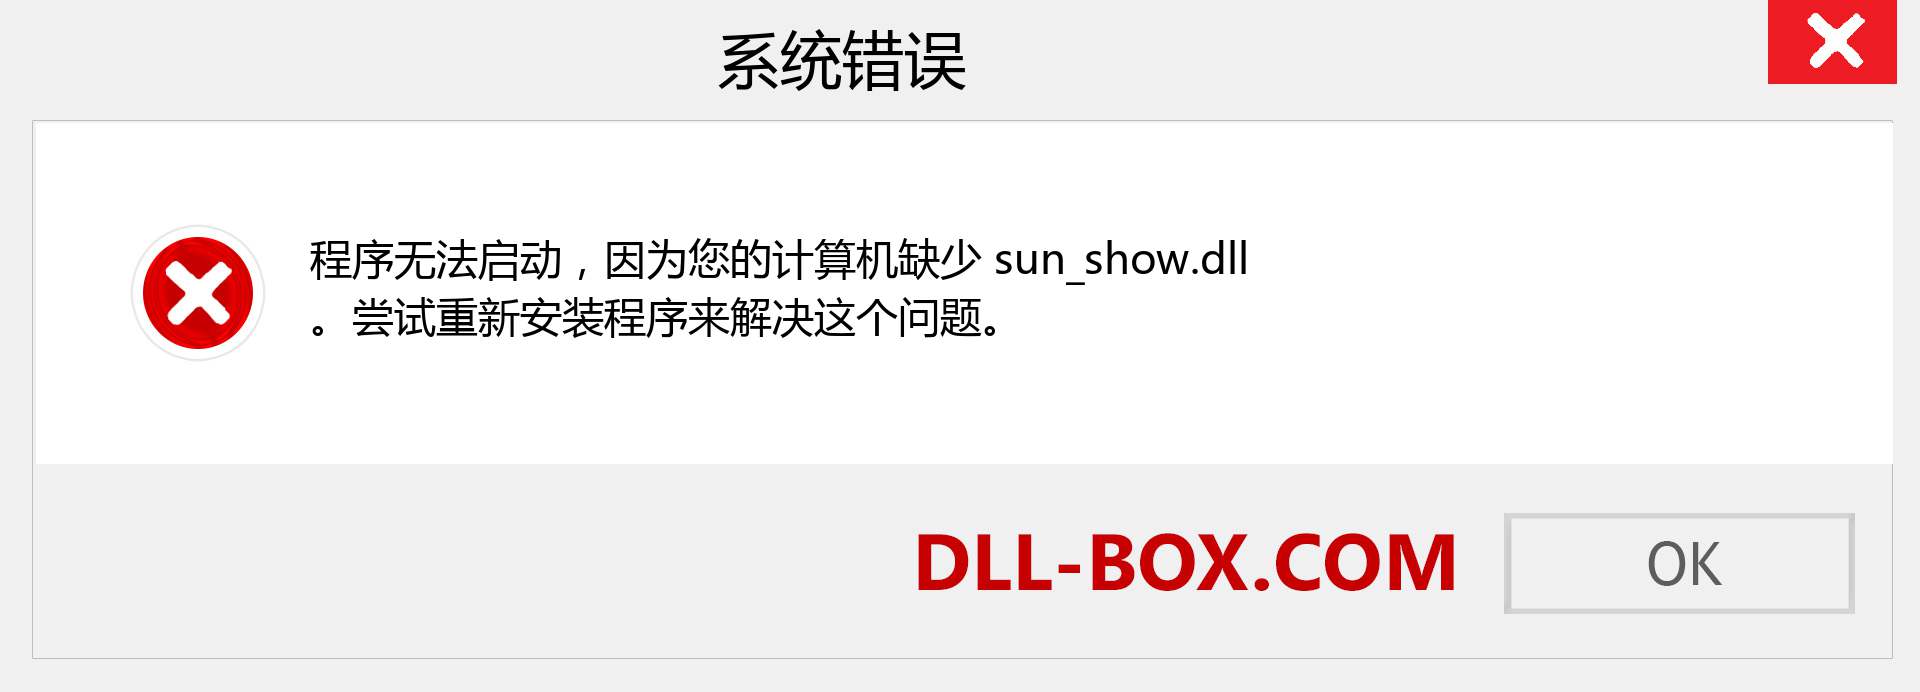 sun_show.dll 文件丢失？。 适用于 Windows 7、8、10 的下载 - 修复 Windows、照片、图像上的 sun_show dll 丢失错误